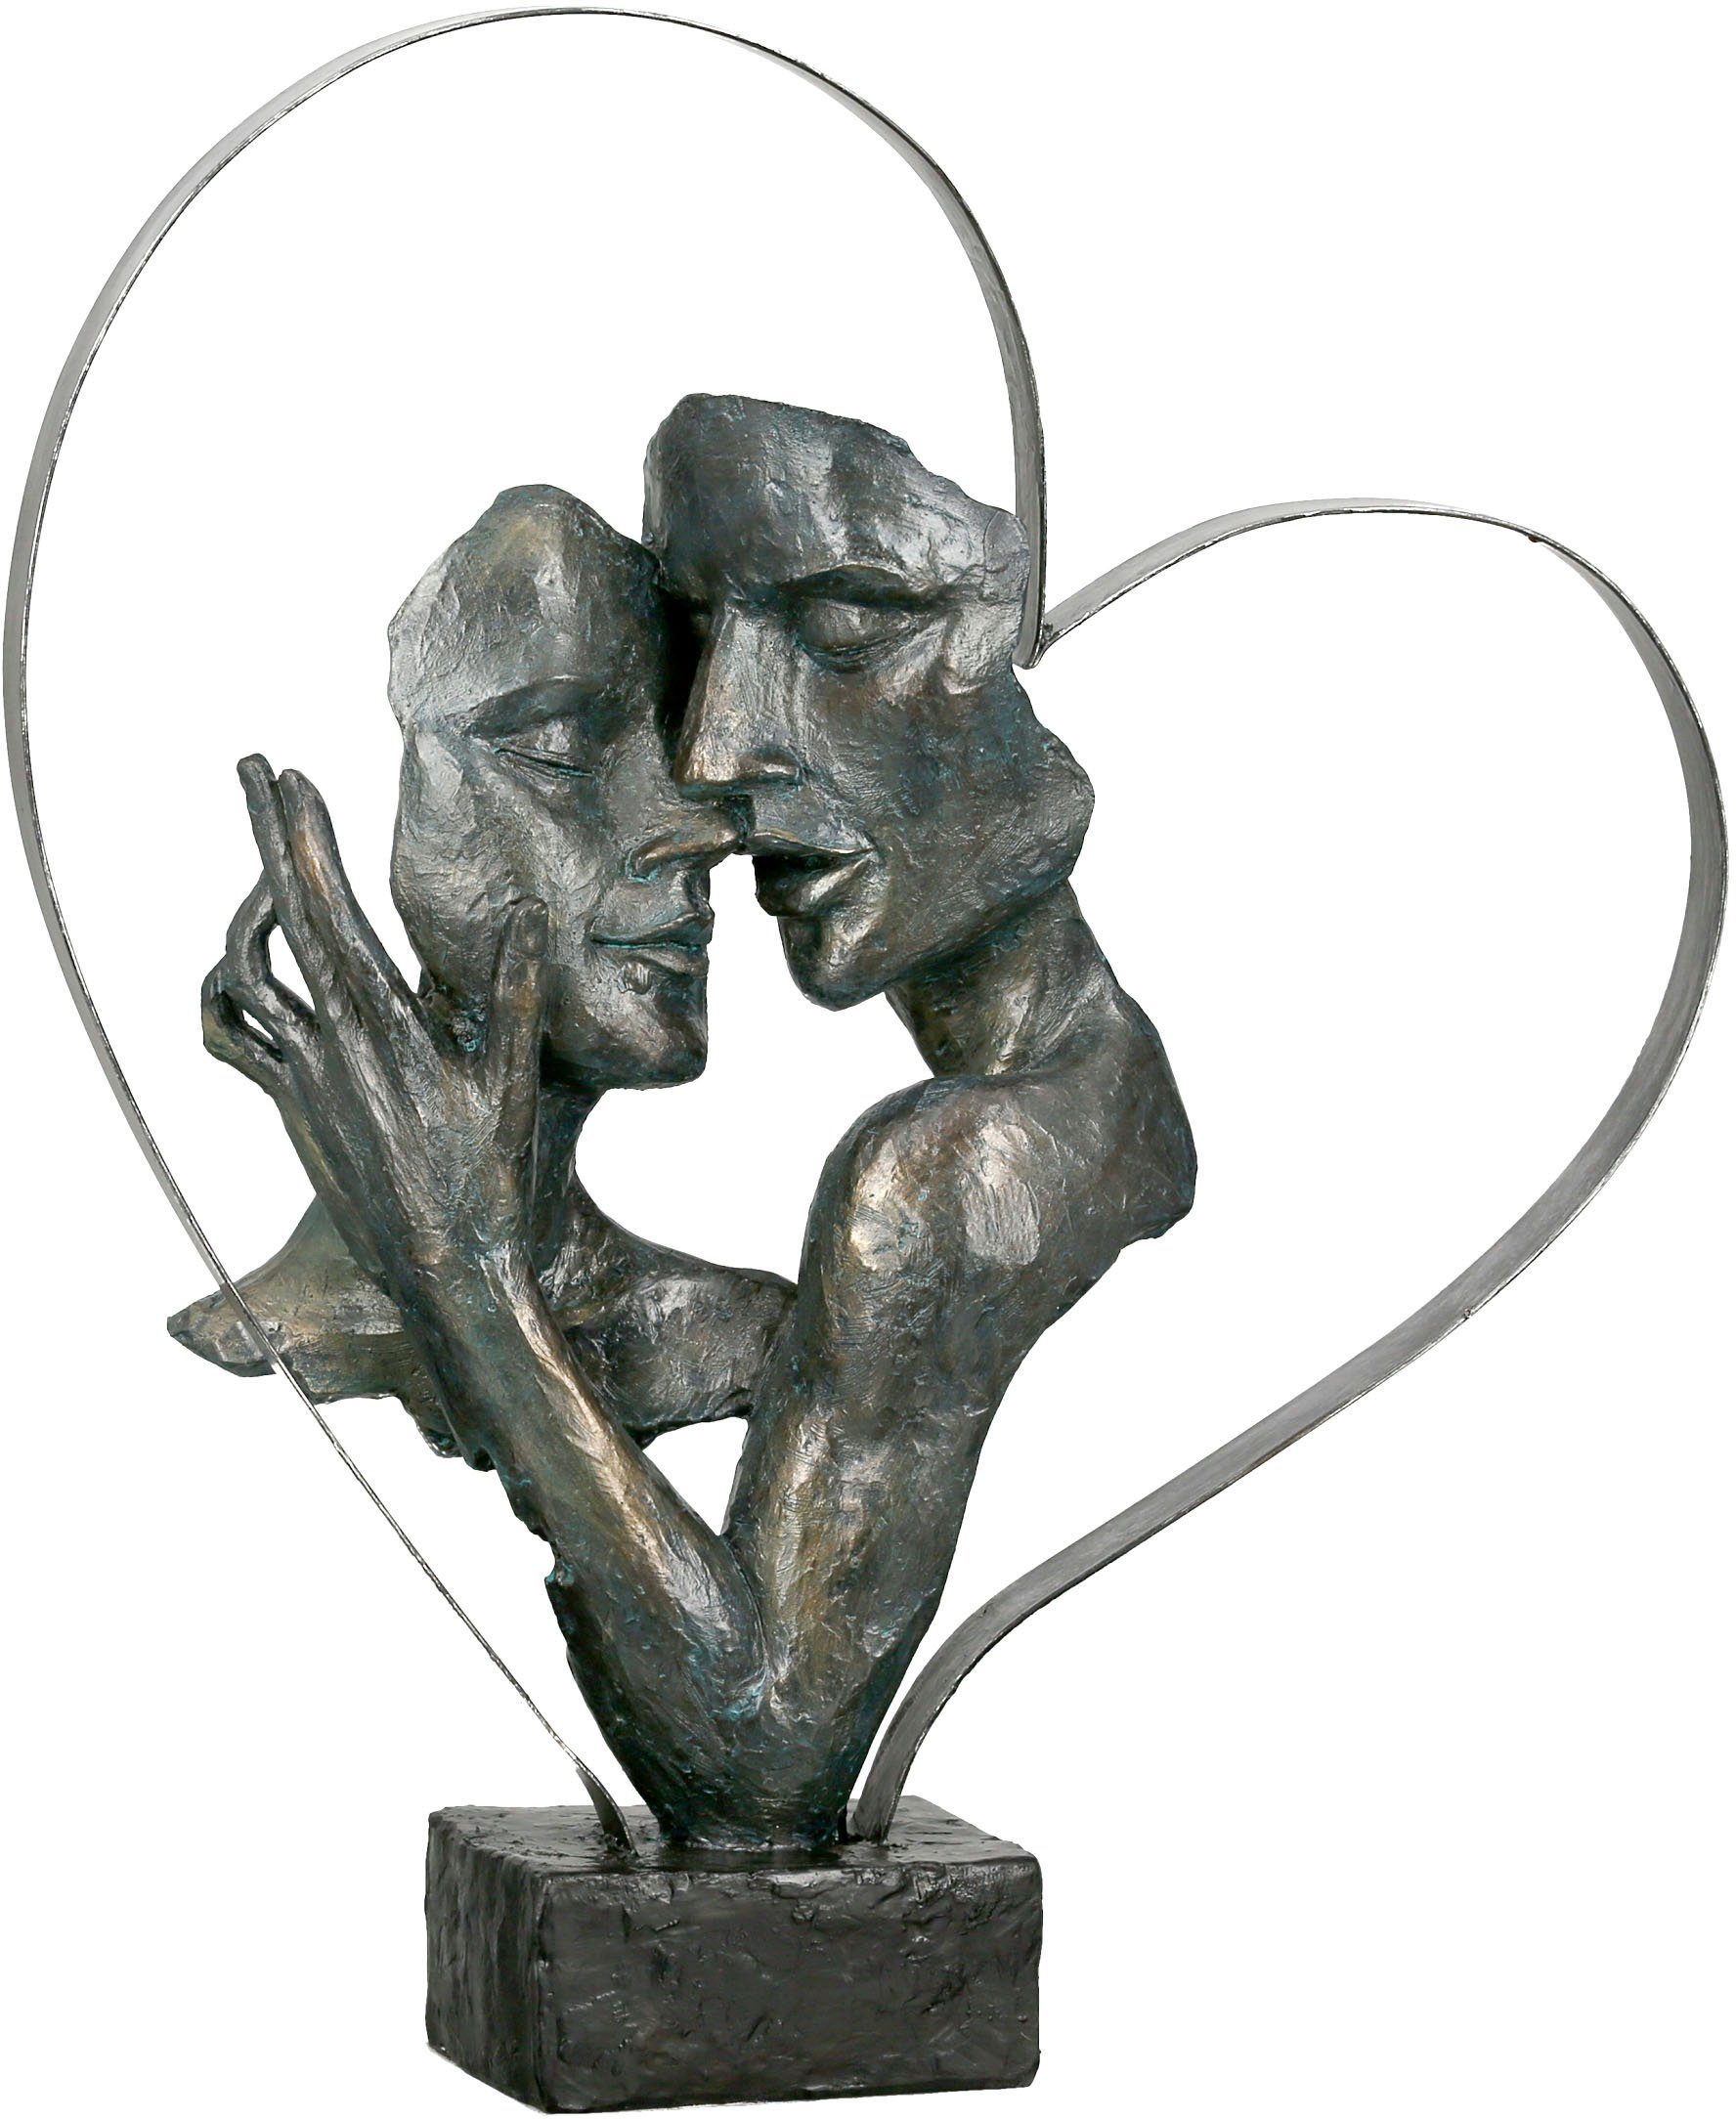 GILDE Decoratief figuur Sculptuur Essential, bronskleurig/bruin Decoratief object, hoogte 37 cm, paartje in metalen hart, antiek-finish, met teksthanger, woonkamer (1 stuk)